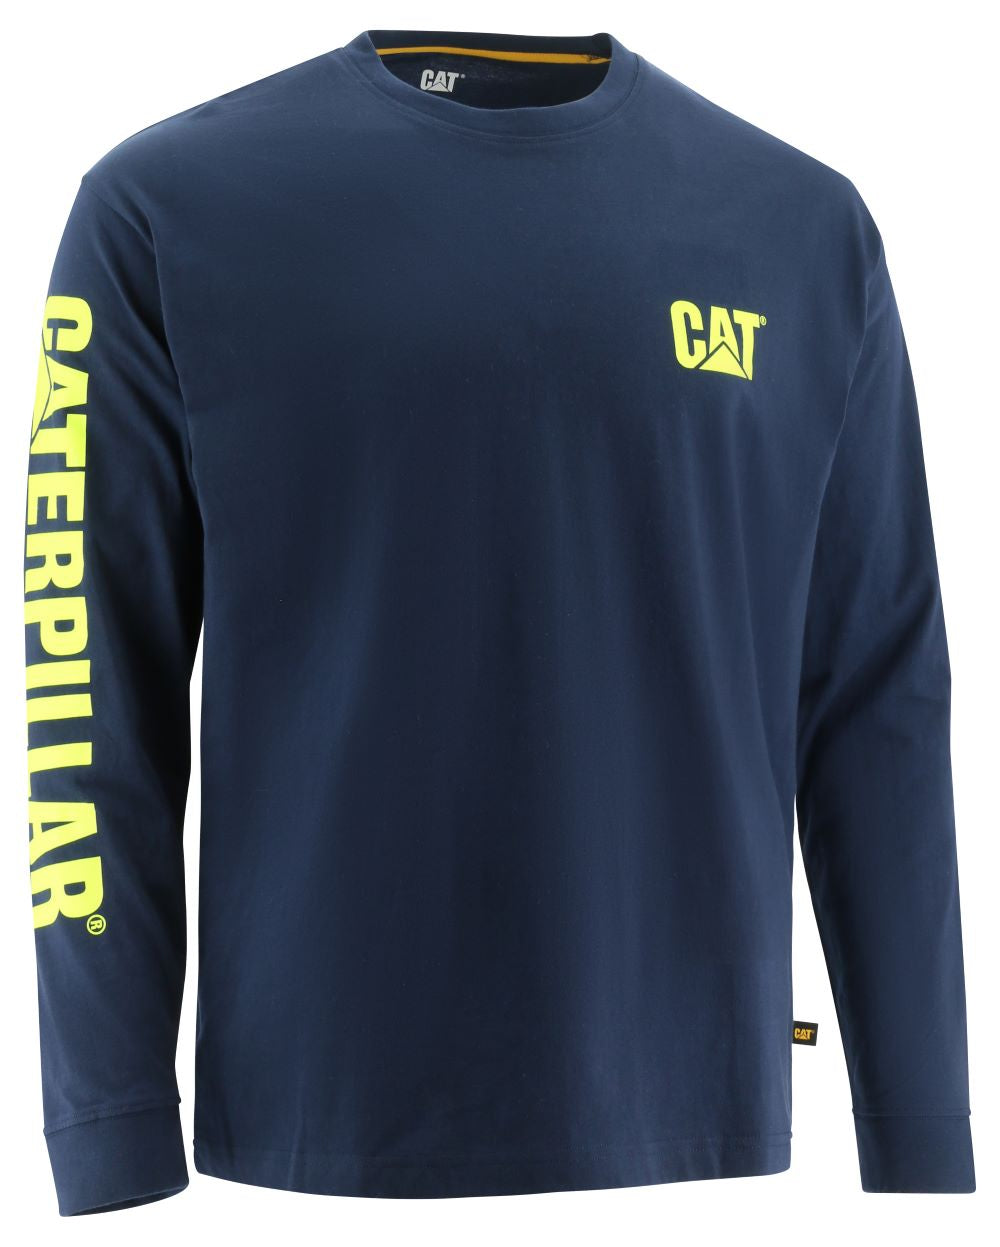 'Caterpillar' Men's Trademark Banner Tee - Detriot Blue / HiVis Yellow